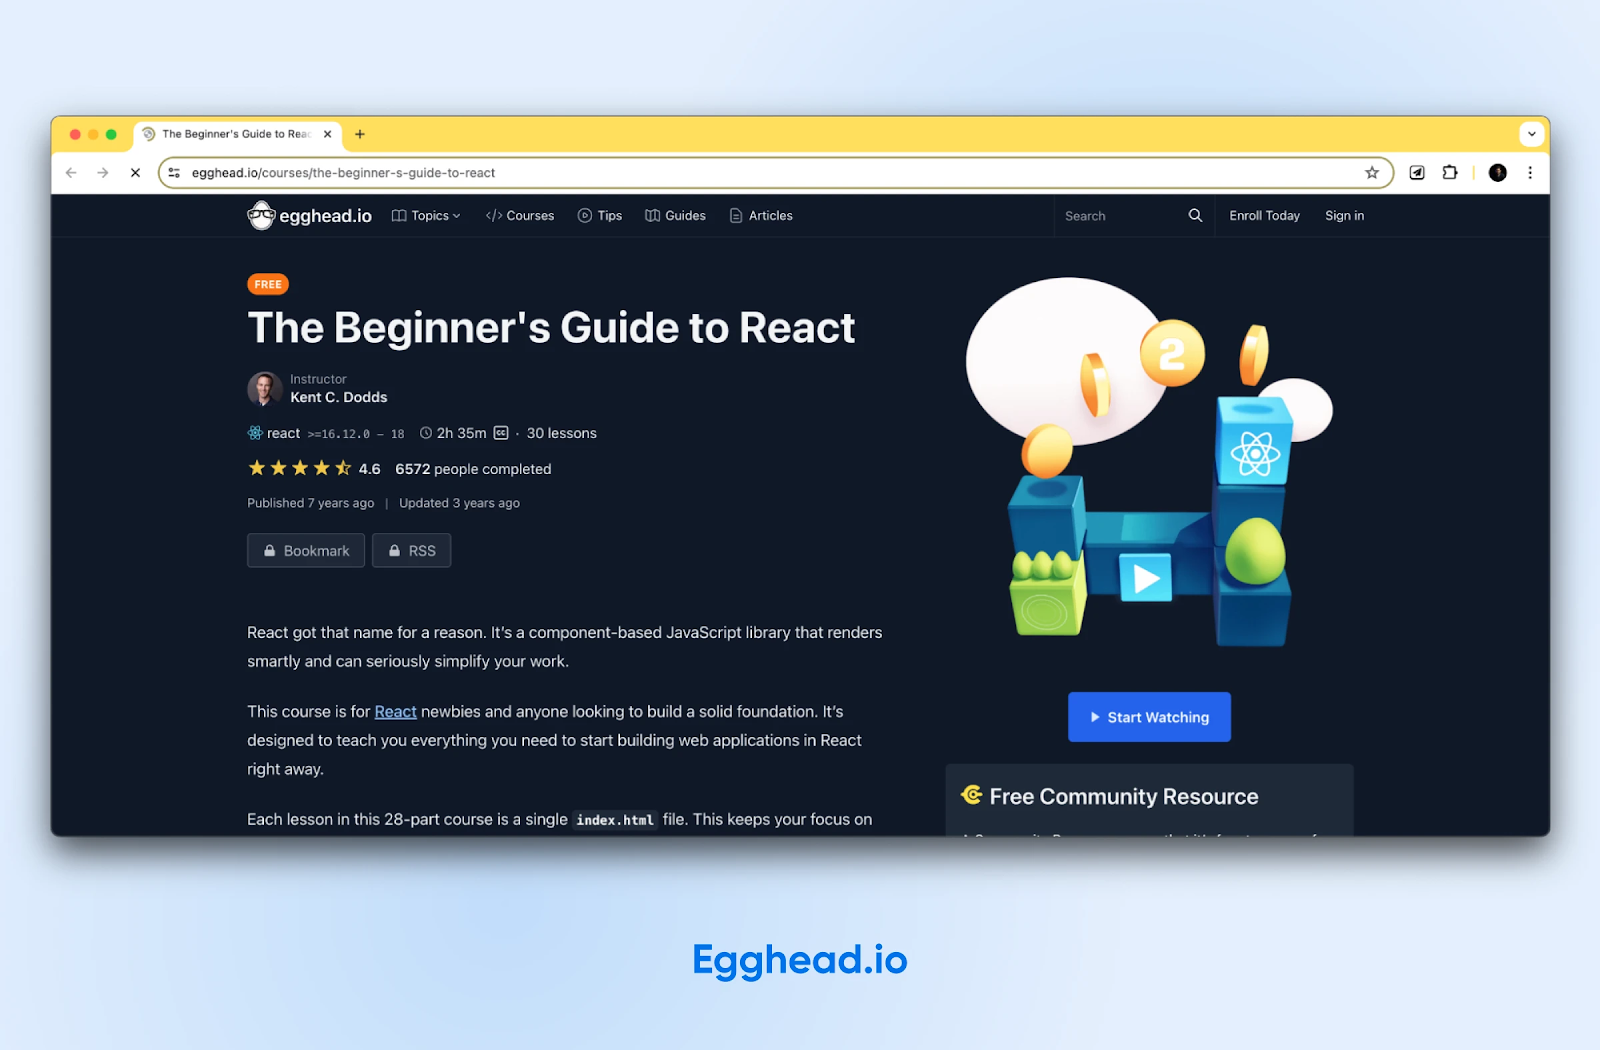 La página web de Egghead.io para "La guía para principiantes para reaccionar" ofrece un vídeo y reseñas de usuarios.